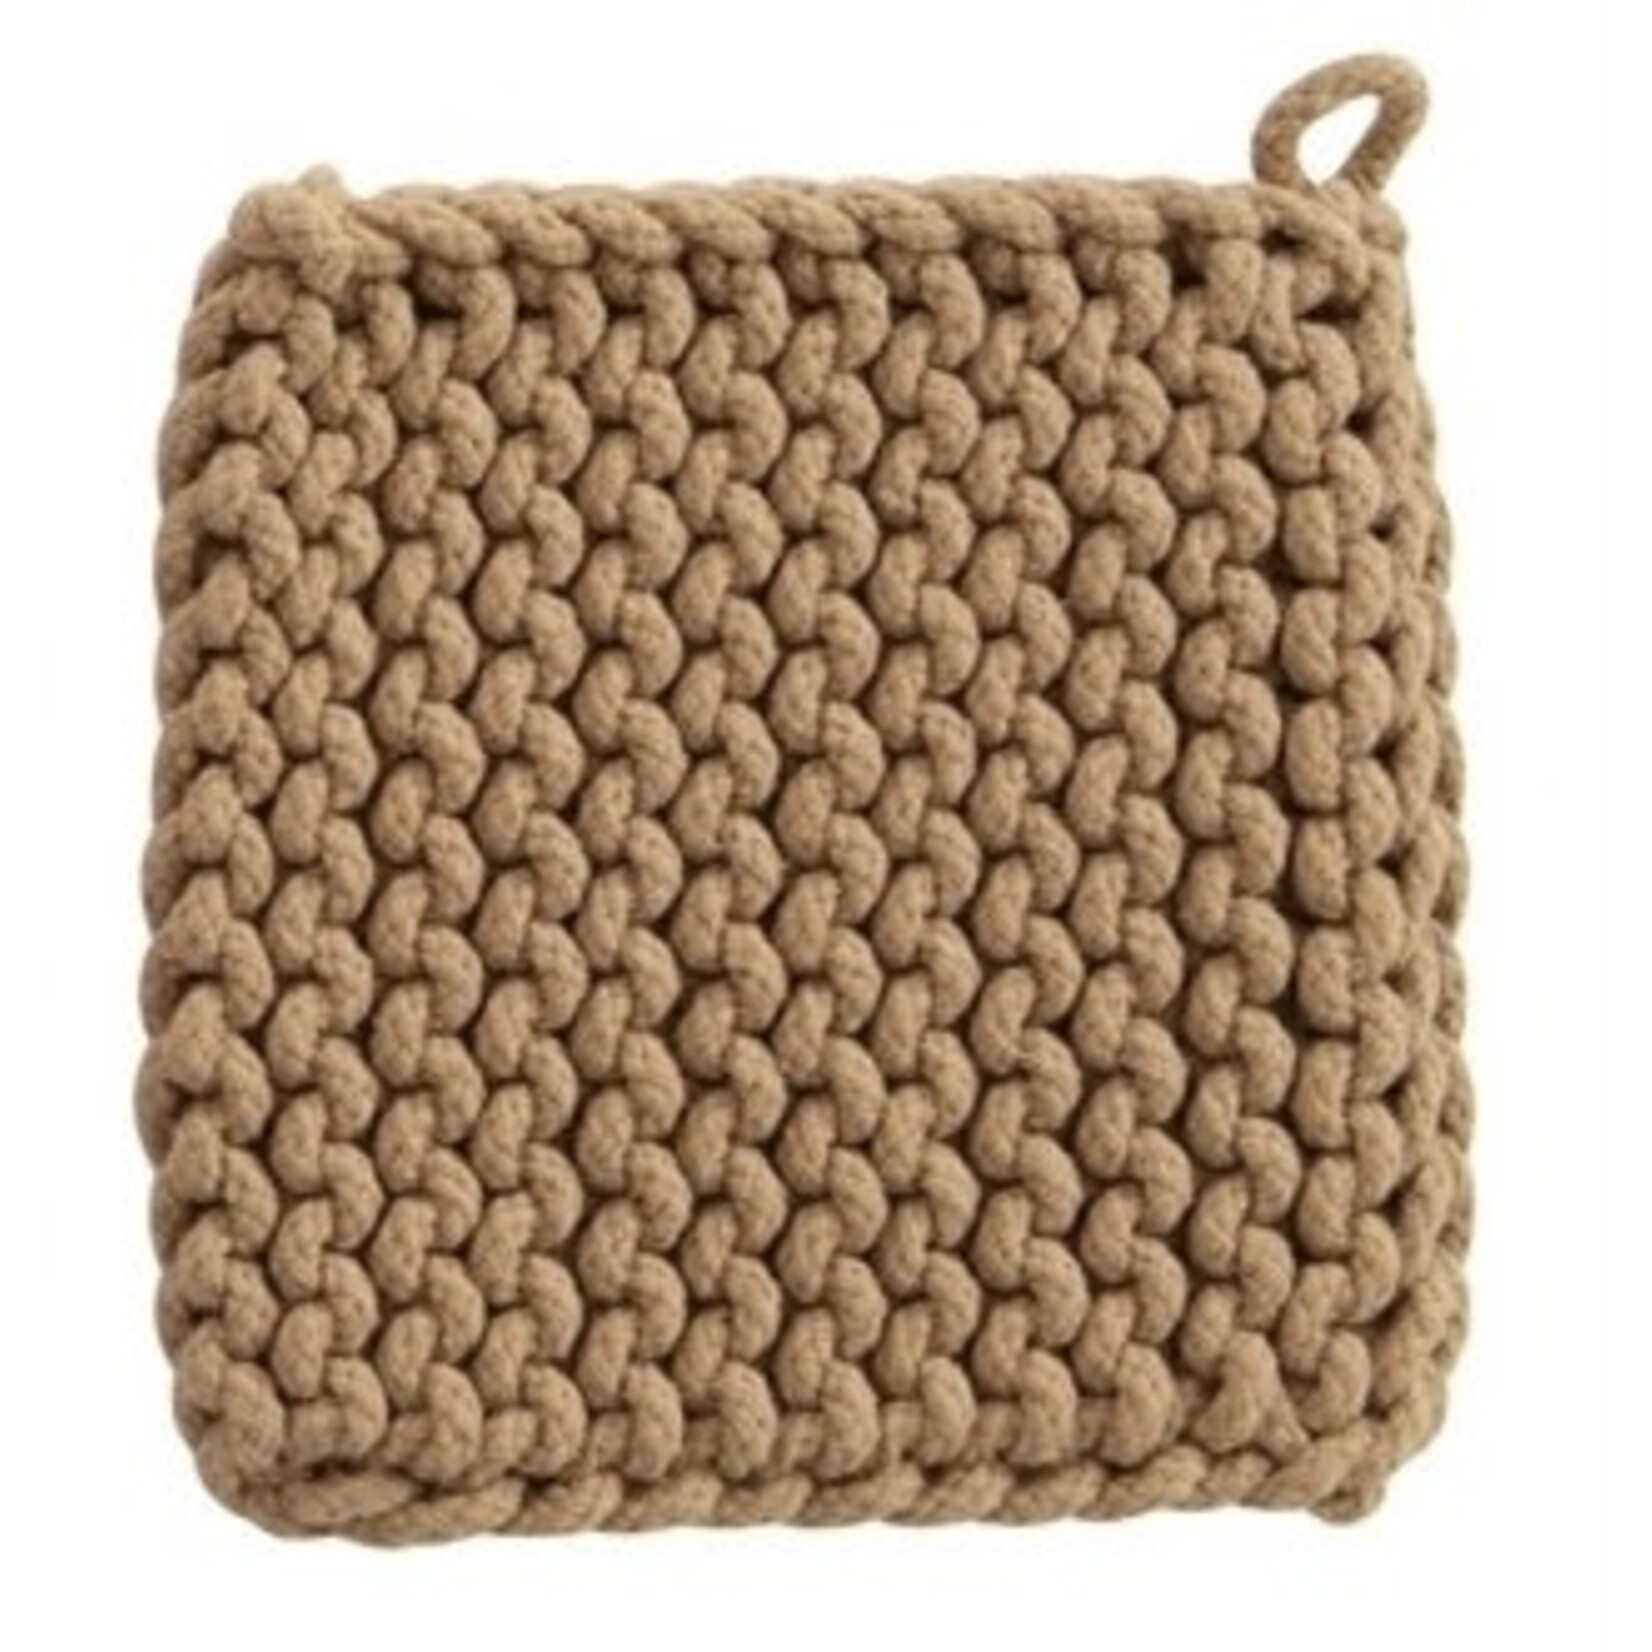 Creative Co-op 8” Square Crochet Cotton Potholder